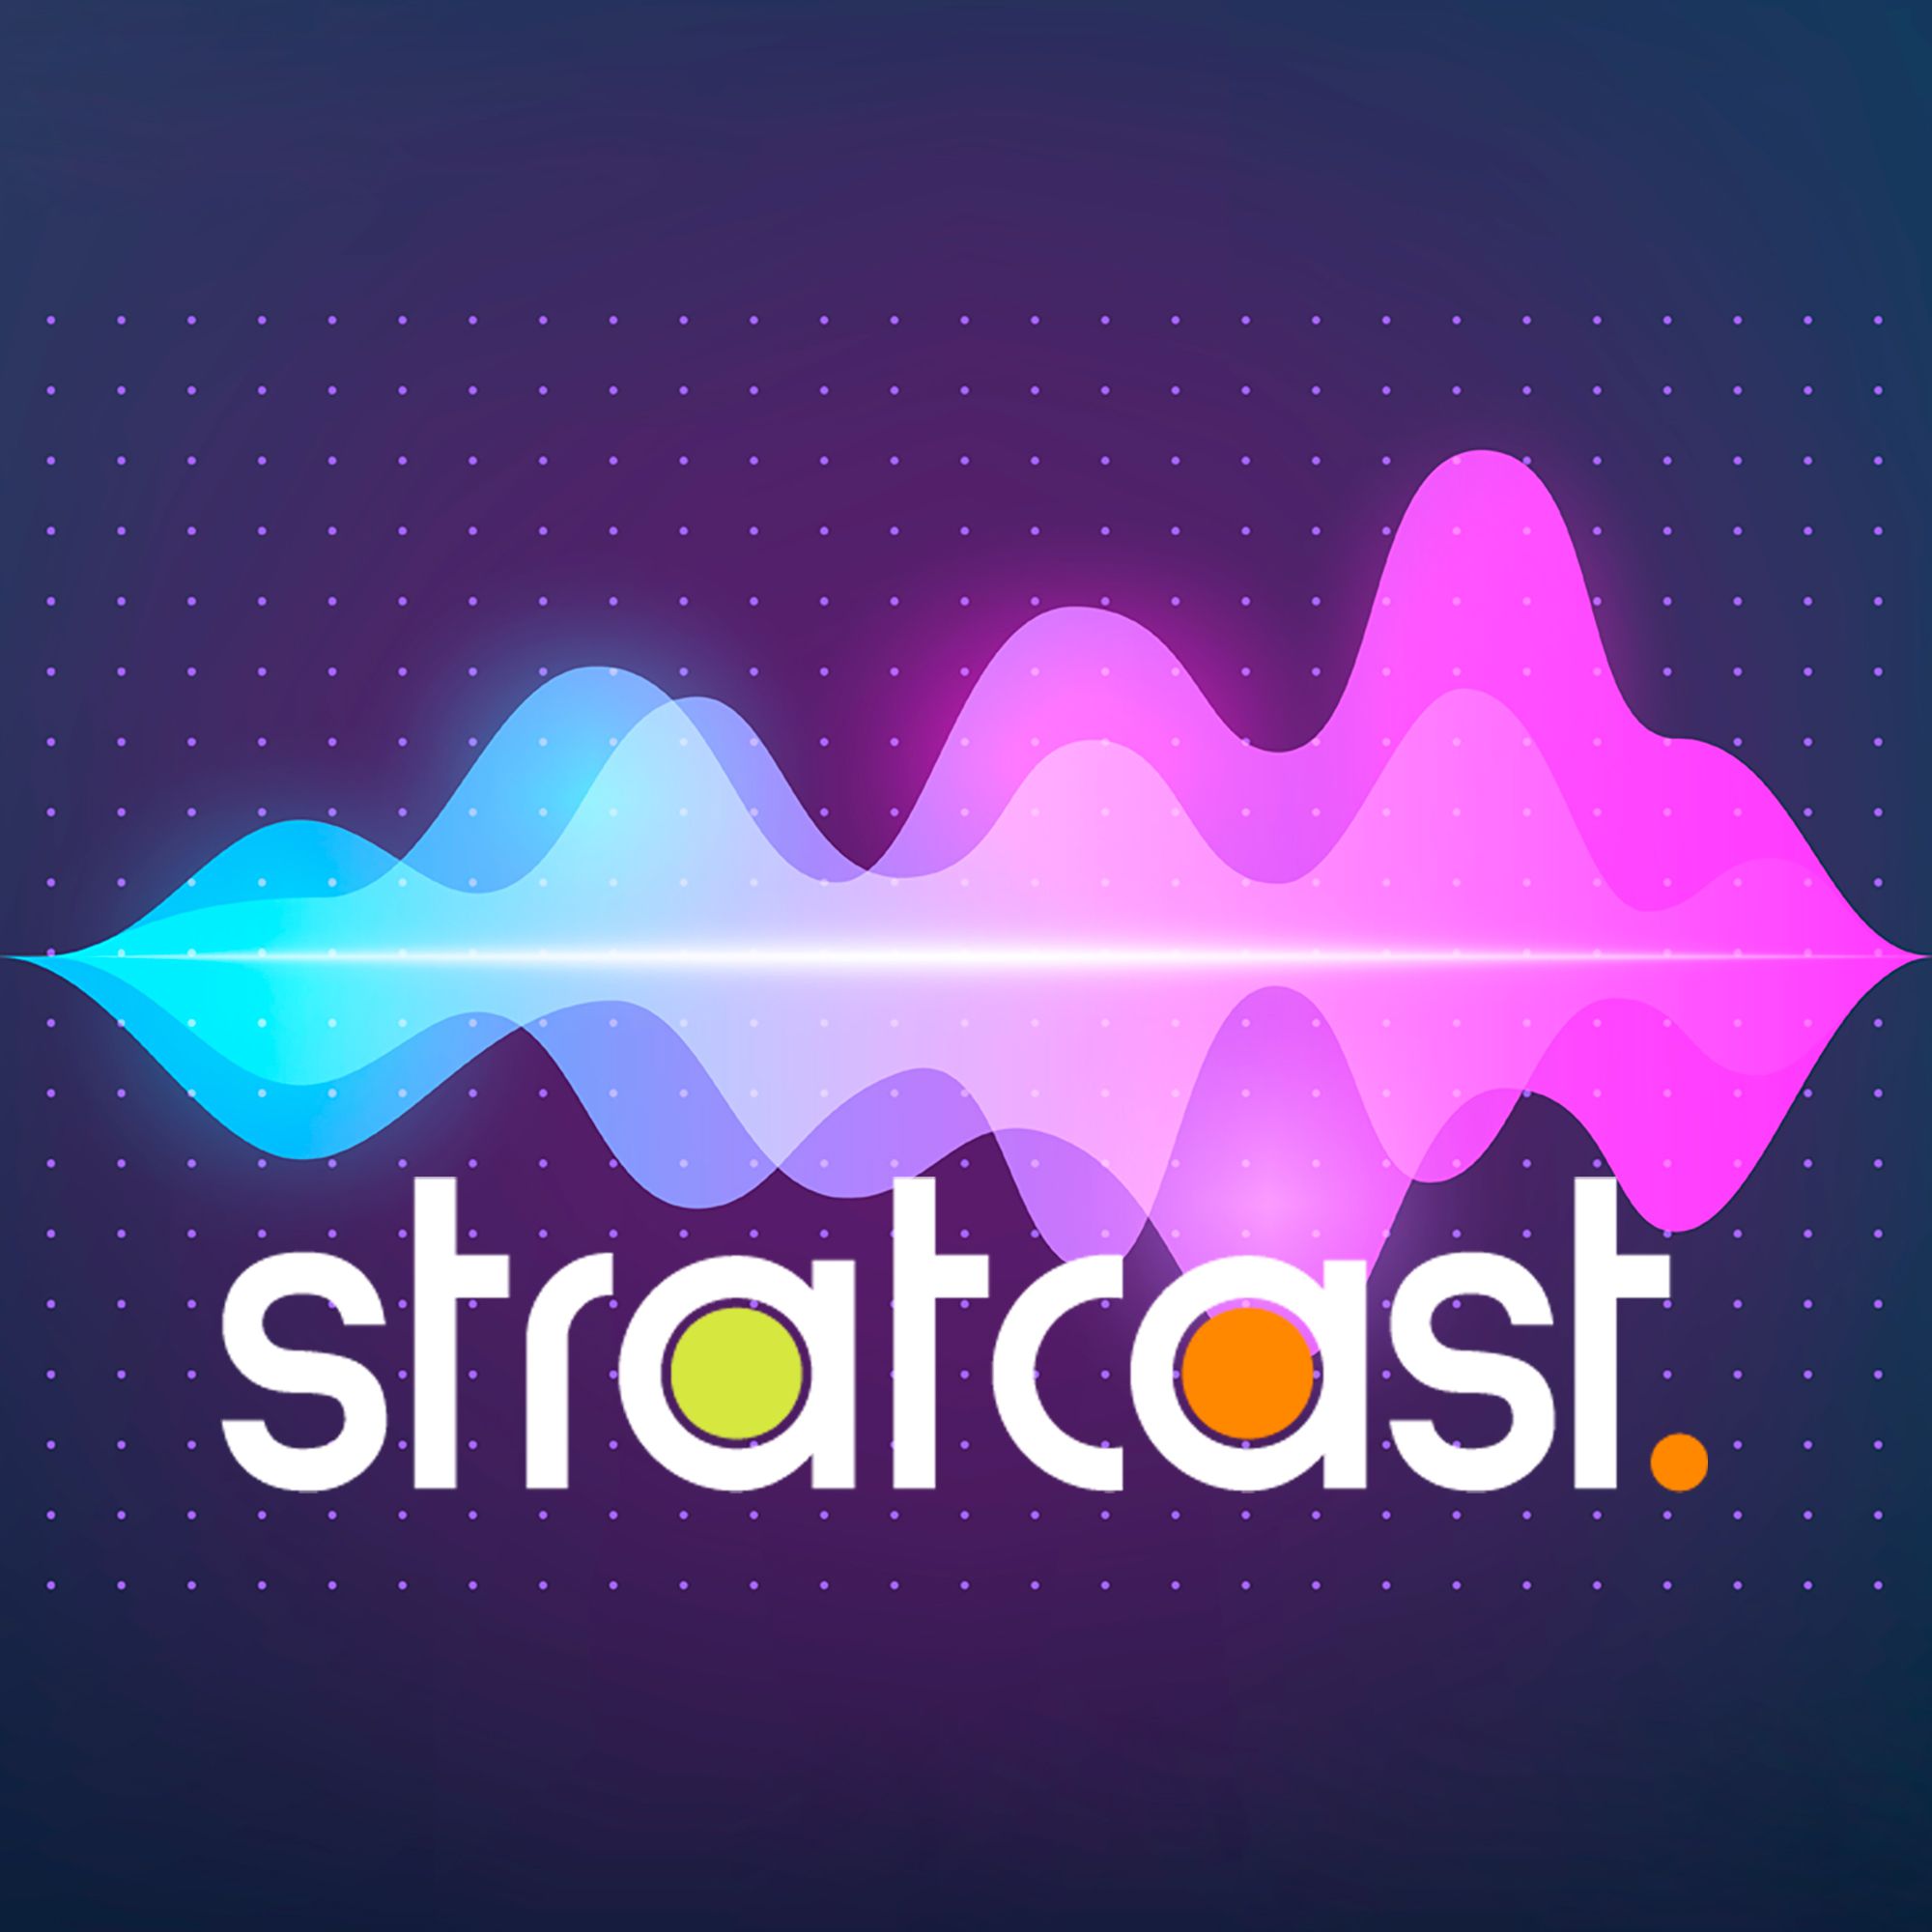 Stratcast